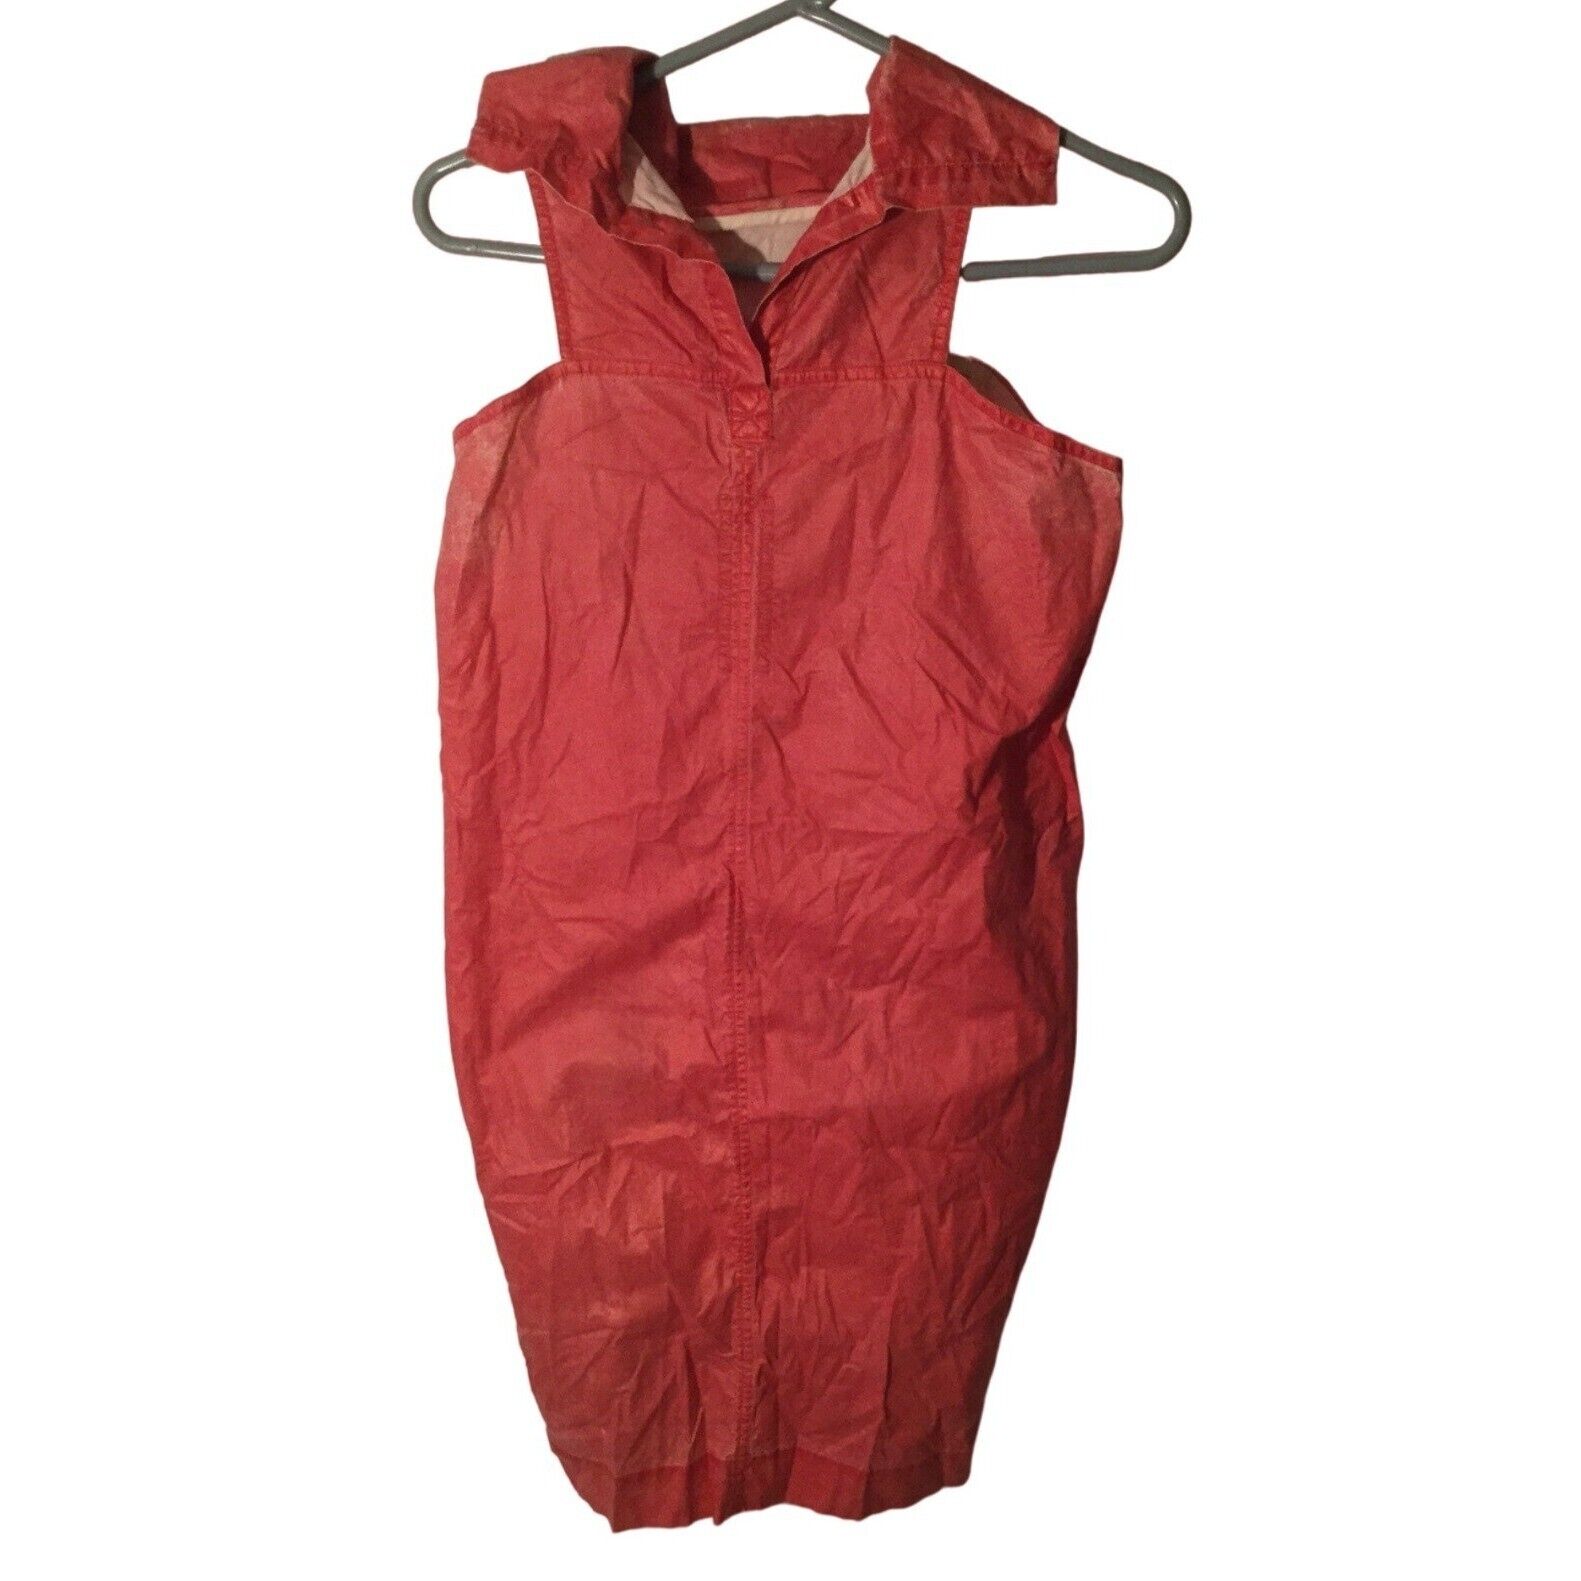 Rick Owens Red Sleeveless Dress Size Small S SM Italy Short Mini